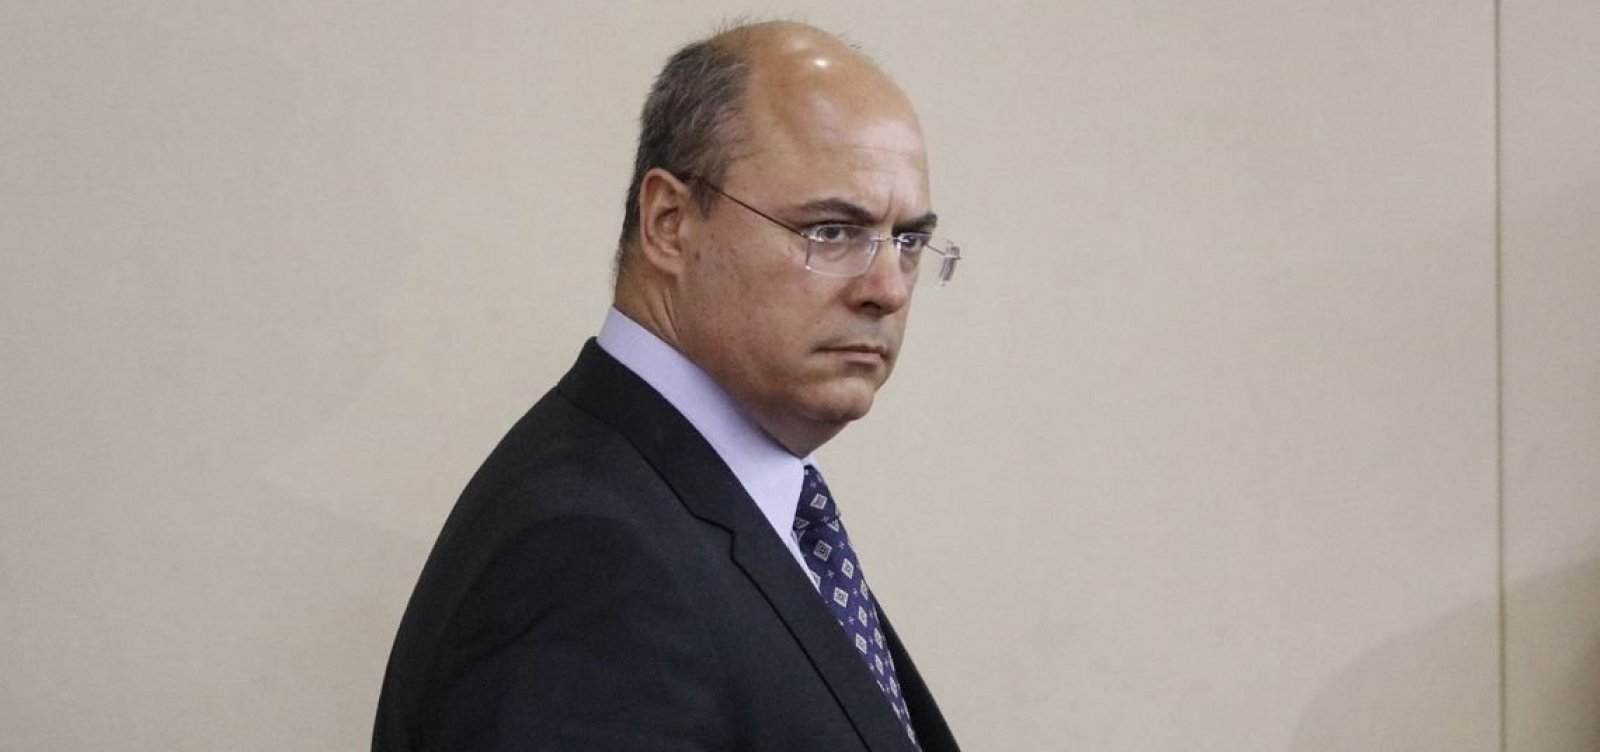 Governador do Rio nega acusações de Bolsonaro e diz que foi 'atacado injustamente'